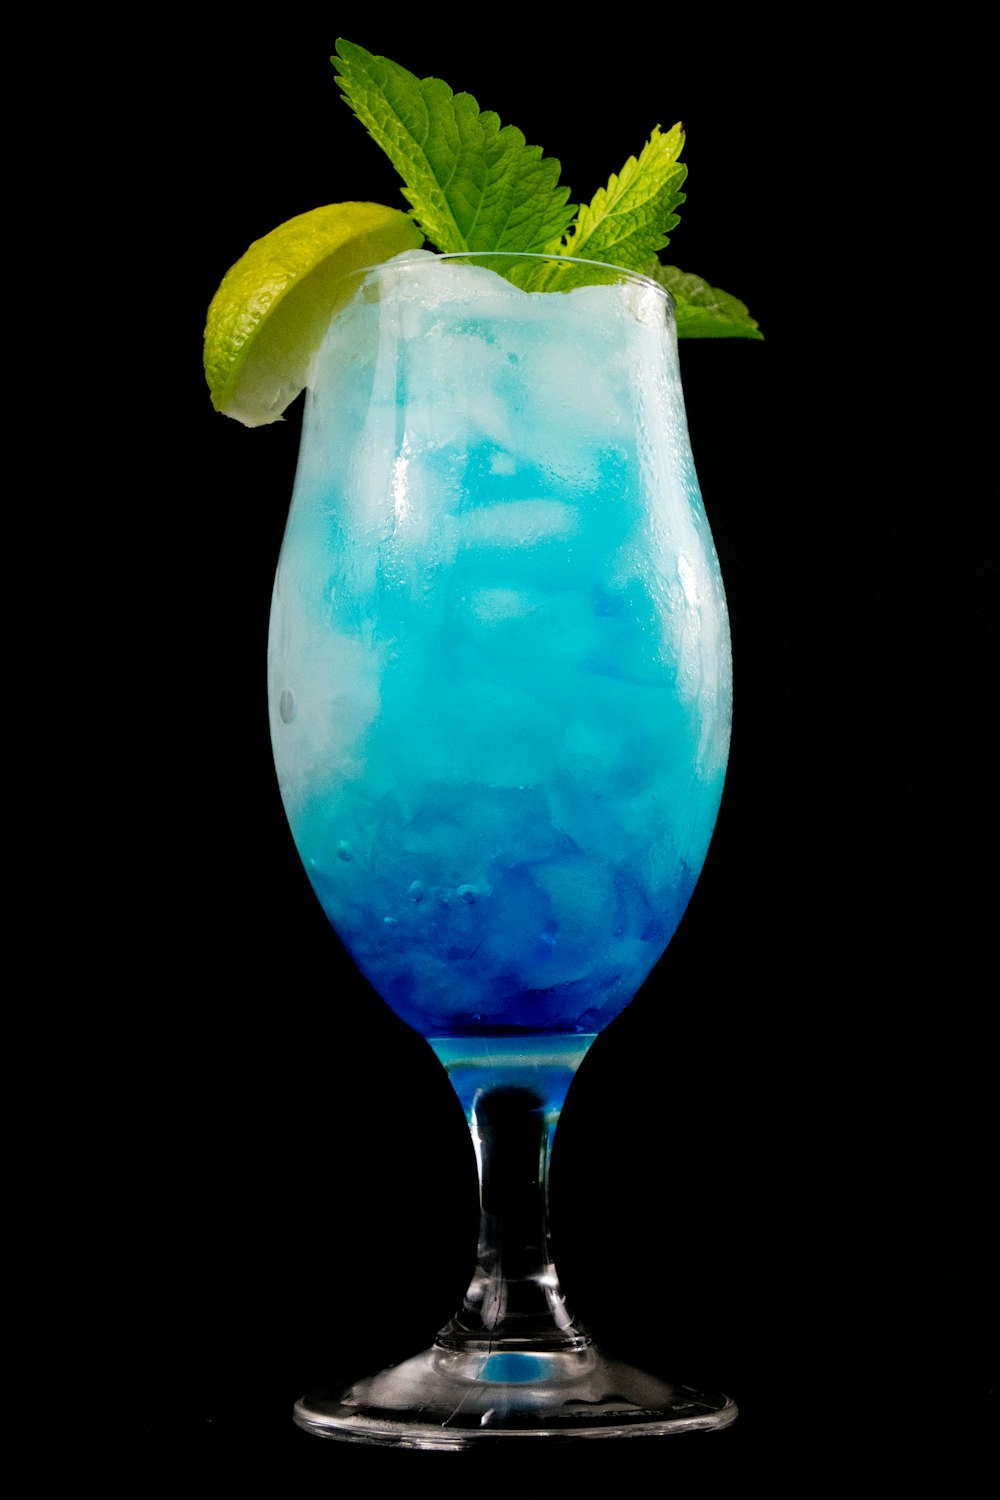 líquido azul em copo transparente com limão fatiado